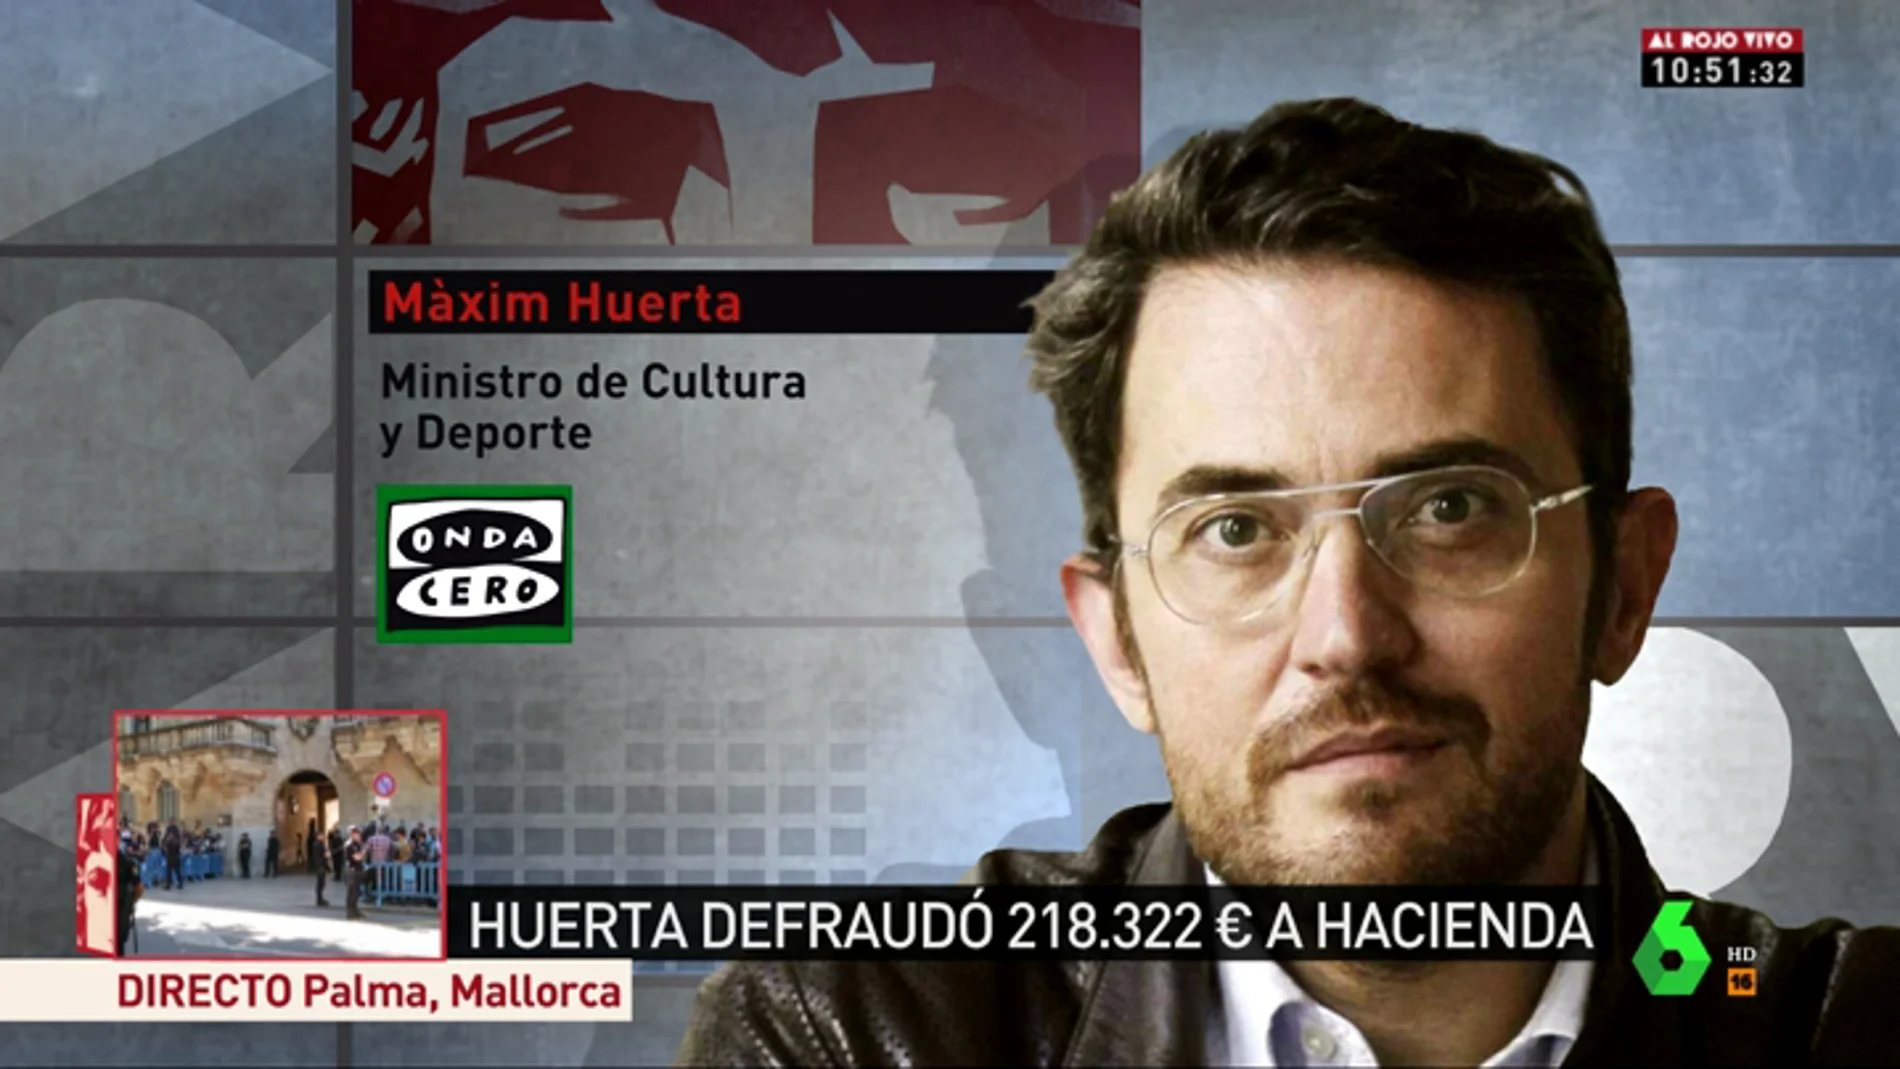 Màxim Huerta no se plantea dimitir: "Estoy al corriente con Hacienda desde hace 10 años"